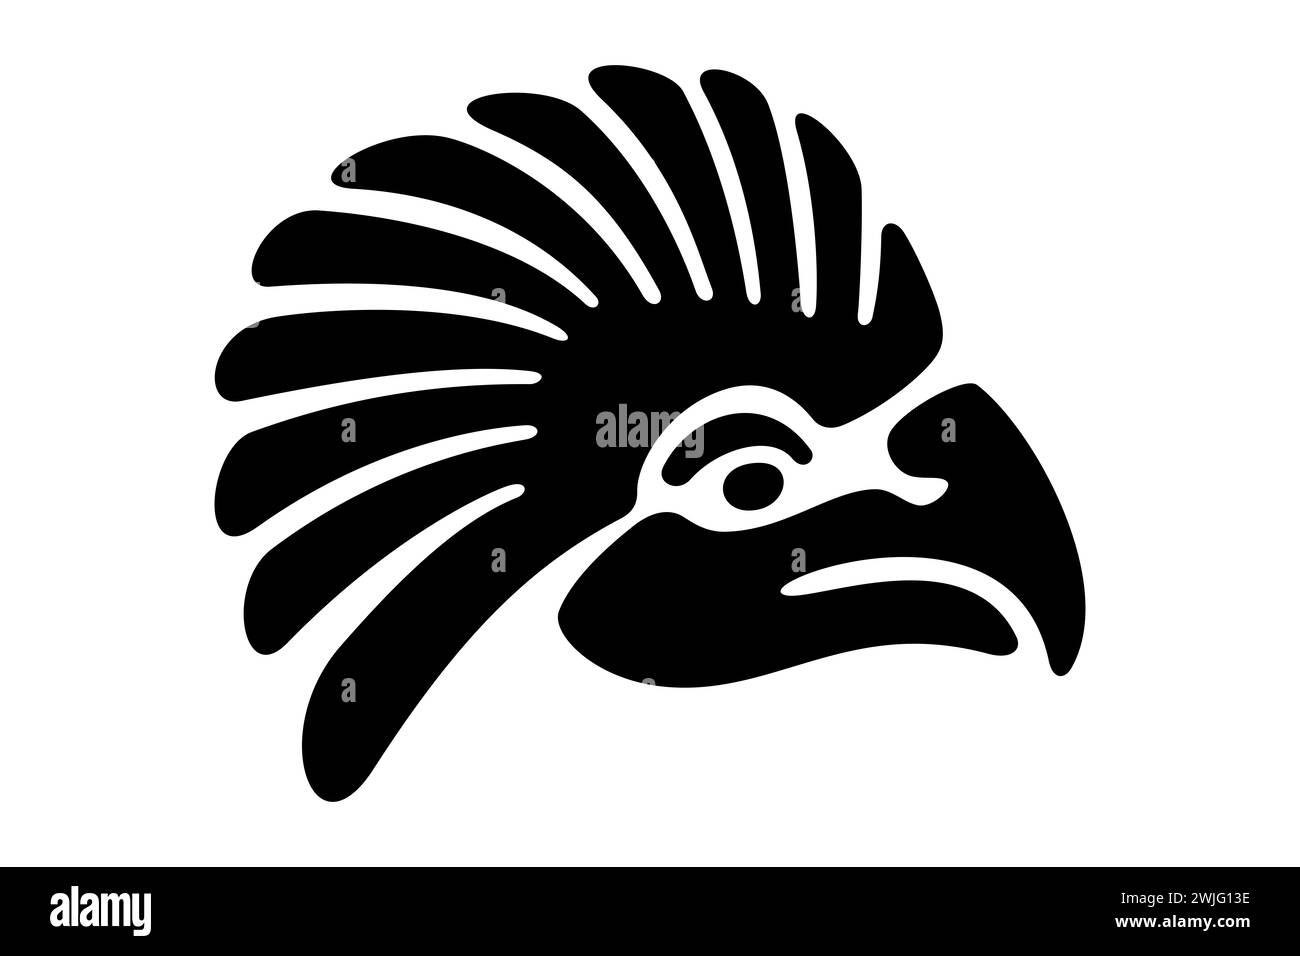 Adlerkopf-Symbol des alten Mexiko. Dekoratives aztekisches Tonstempelmotiv, das den Kopf eines goldenen Adlers zeigt, wie er in Tenochtitlan gefunden wurde. Stockfoto